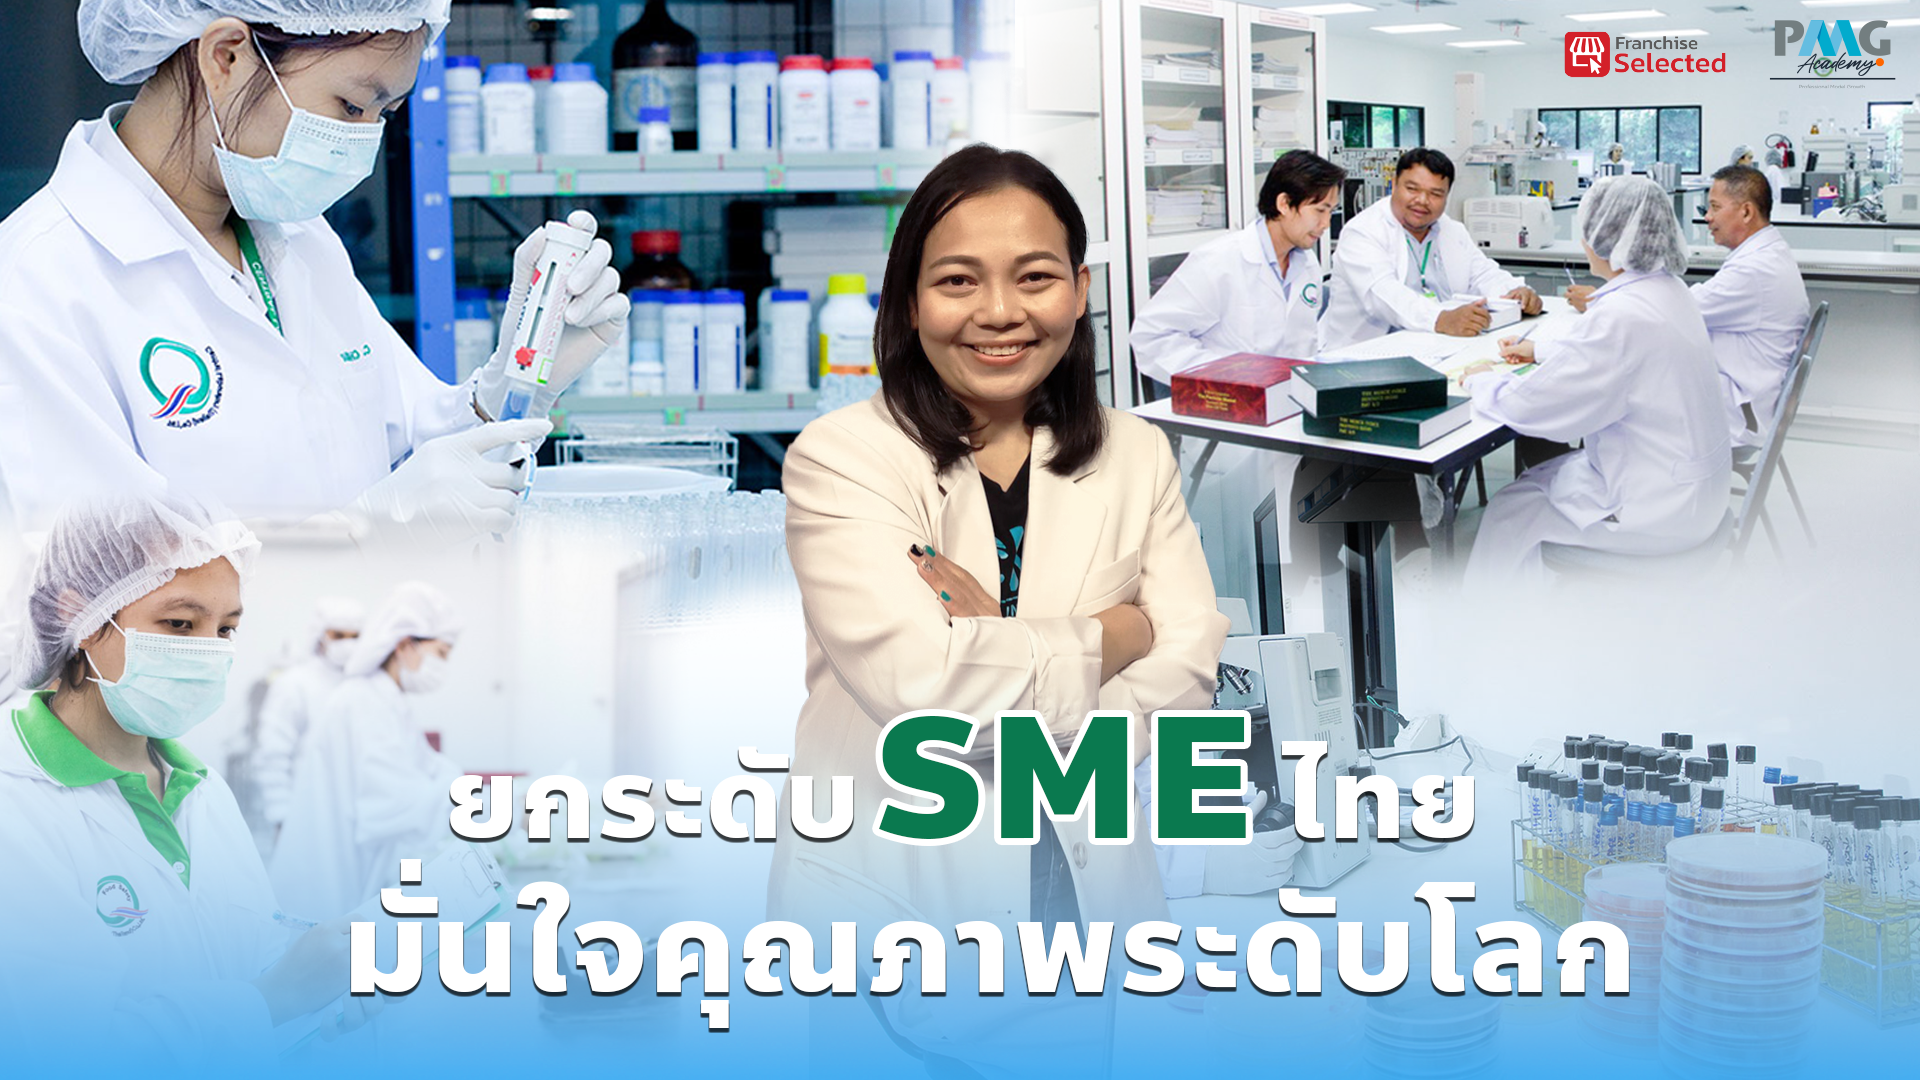 ยกระดับ SME ไทยก้าวไกลด้วยคุณภาพระดับโลก